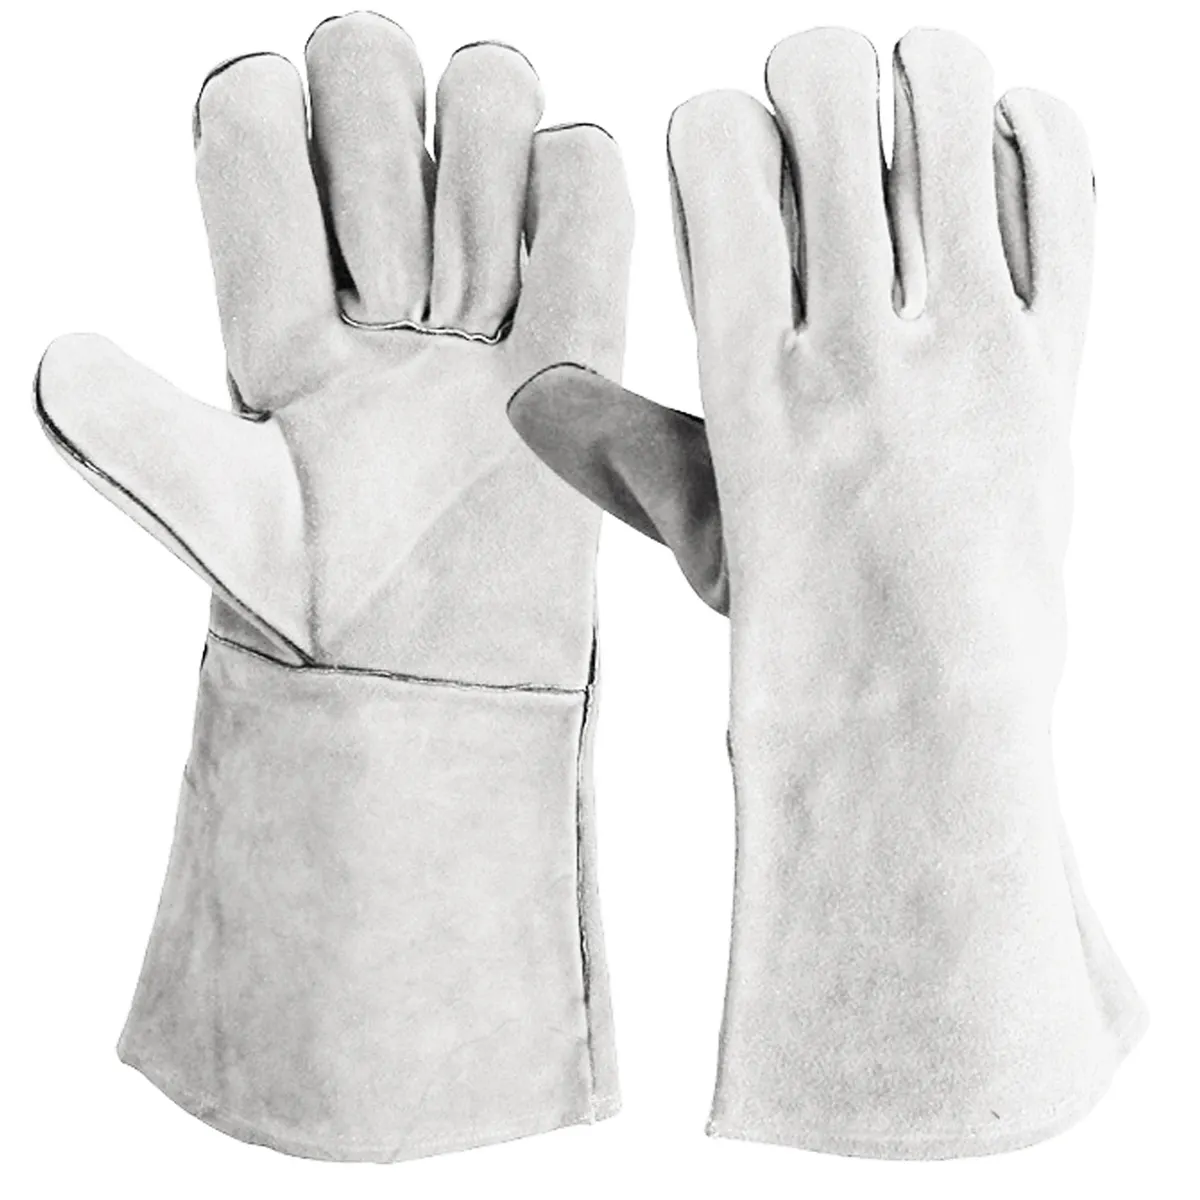 Offre Spéciale cuir de haute qualité Production industrielle Protection thermique travail sécurité gants de soudage